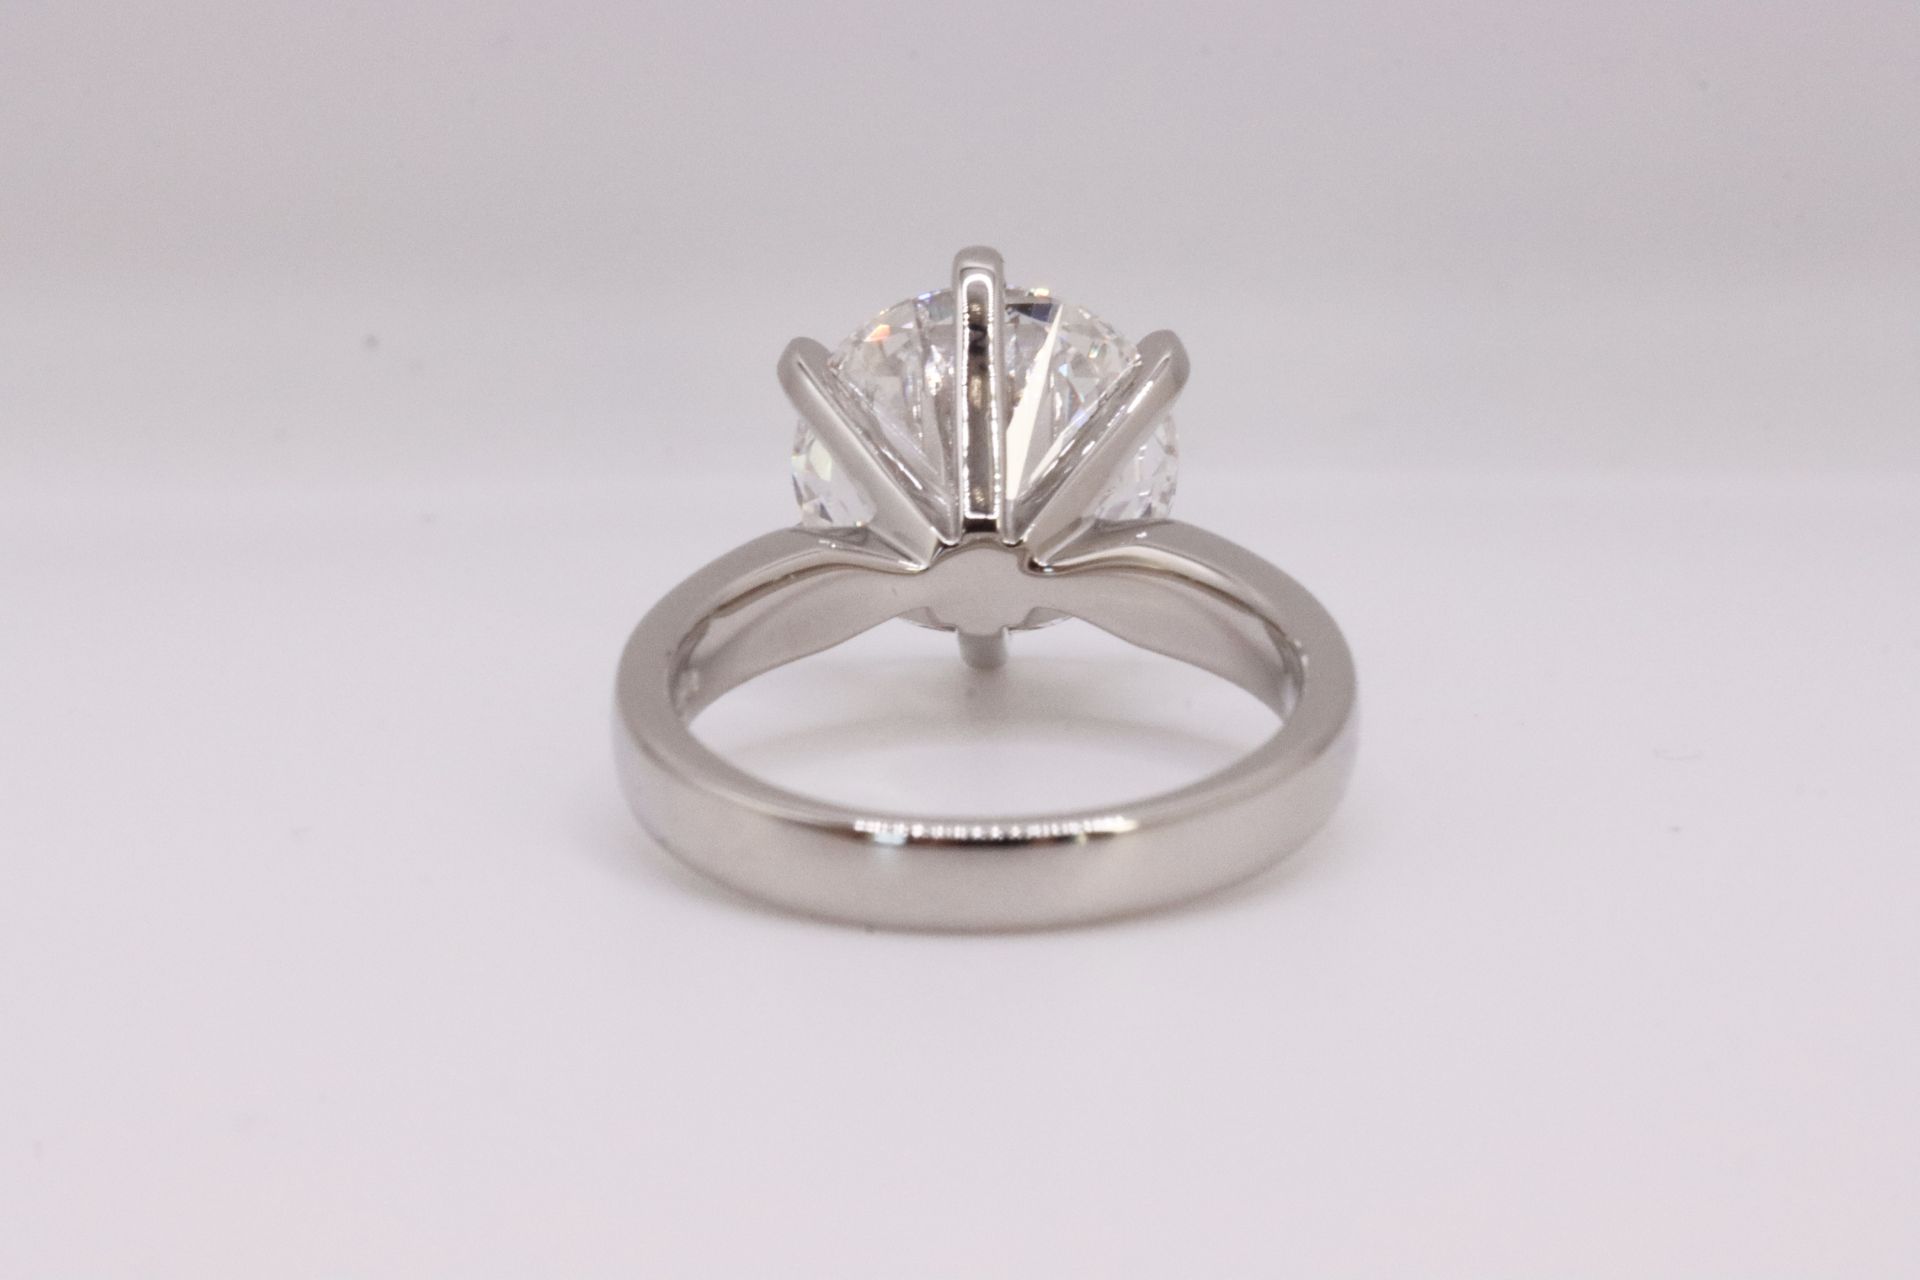 ** ON SALE ** Round brilliant Cut Diamond Platinum Ring 5.00 Carat F Colour VS1 Clarity ID EX EX - Image 5 of 8